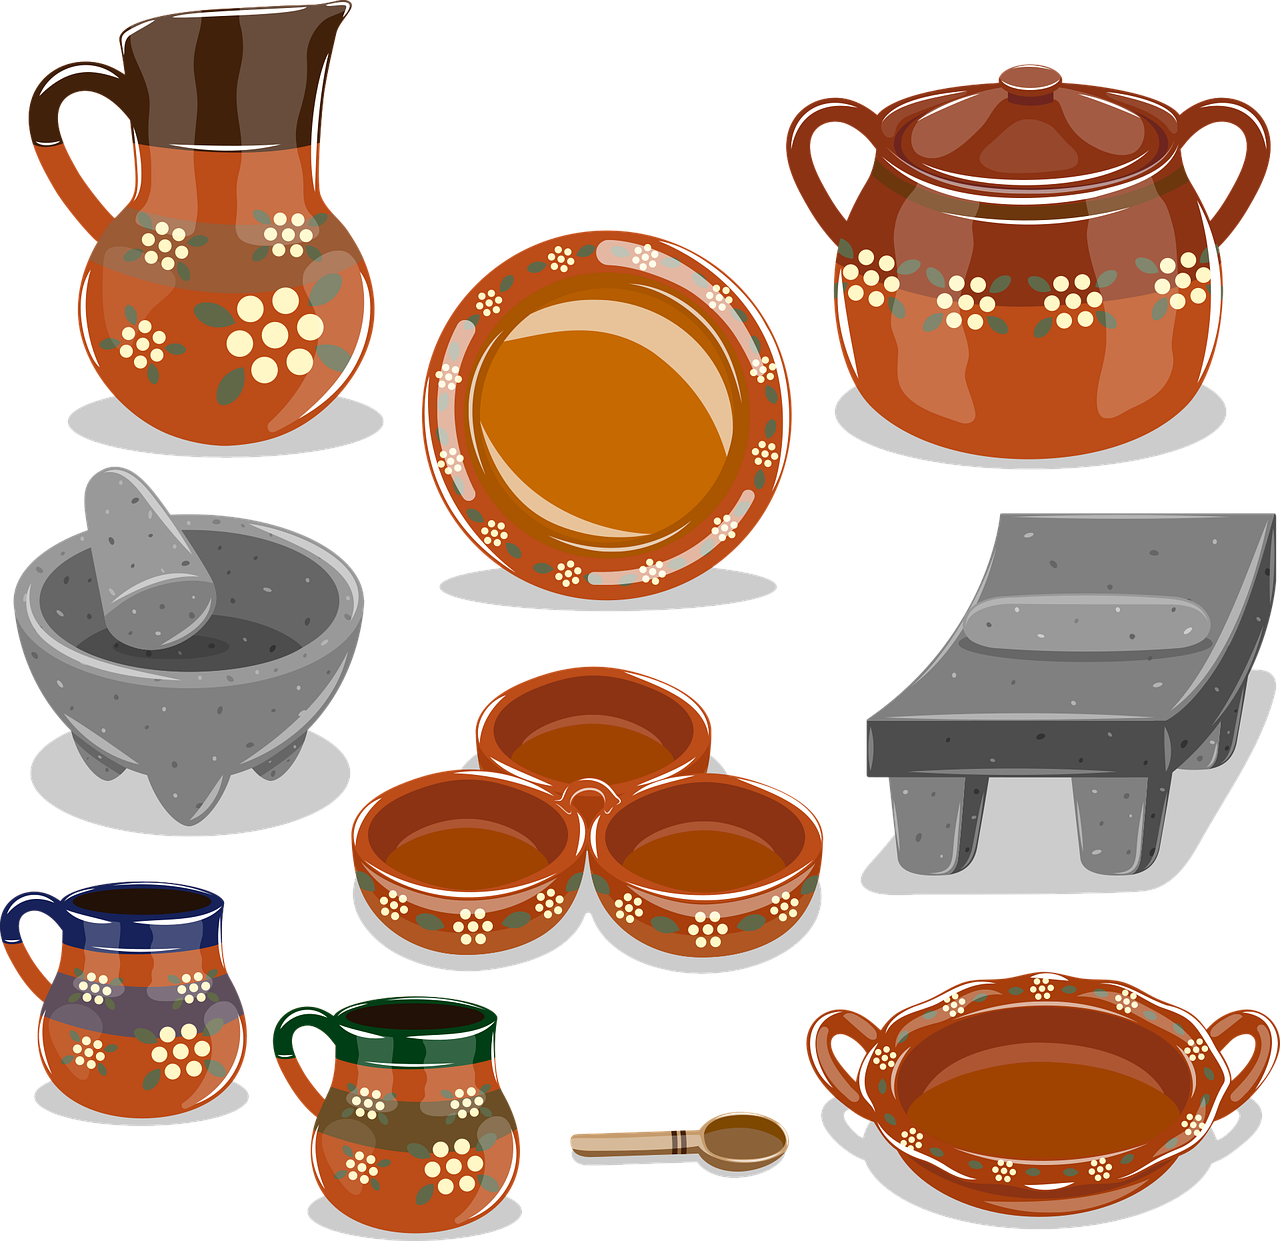 ¿Cómo se llama la cerámica mexicana?